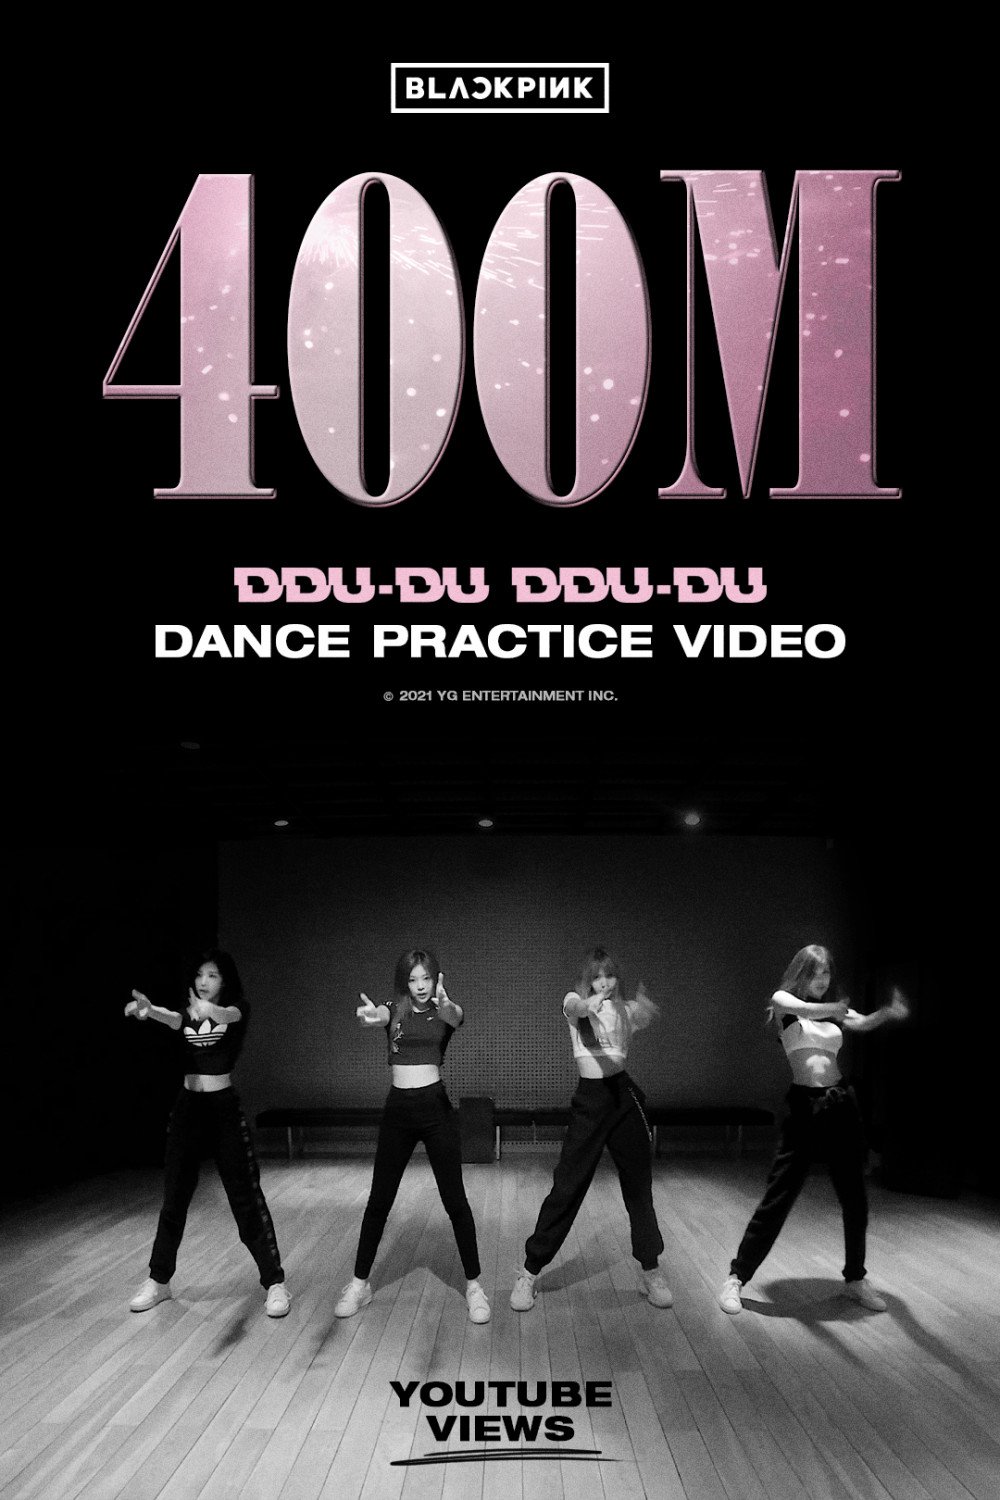 Перформанс-видео BLACKPINK для "How You Like That" набрало 800 млн просмотров